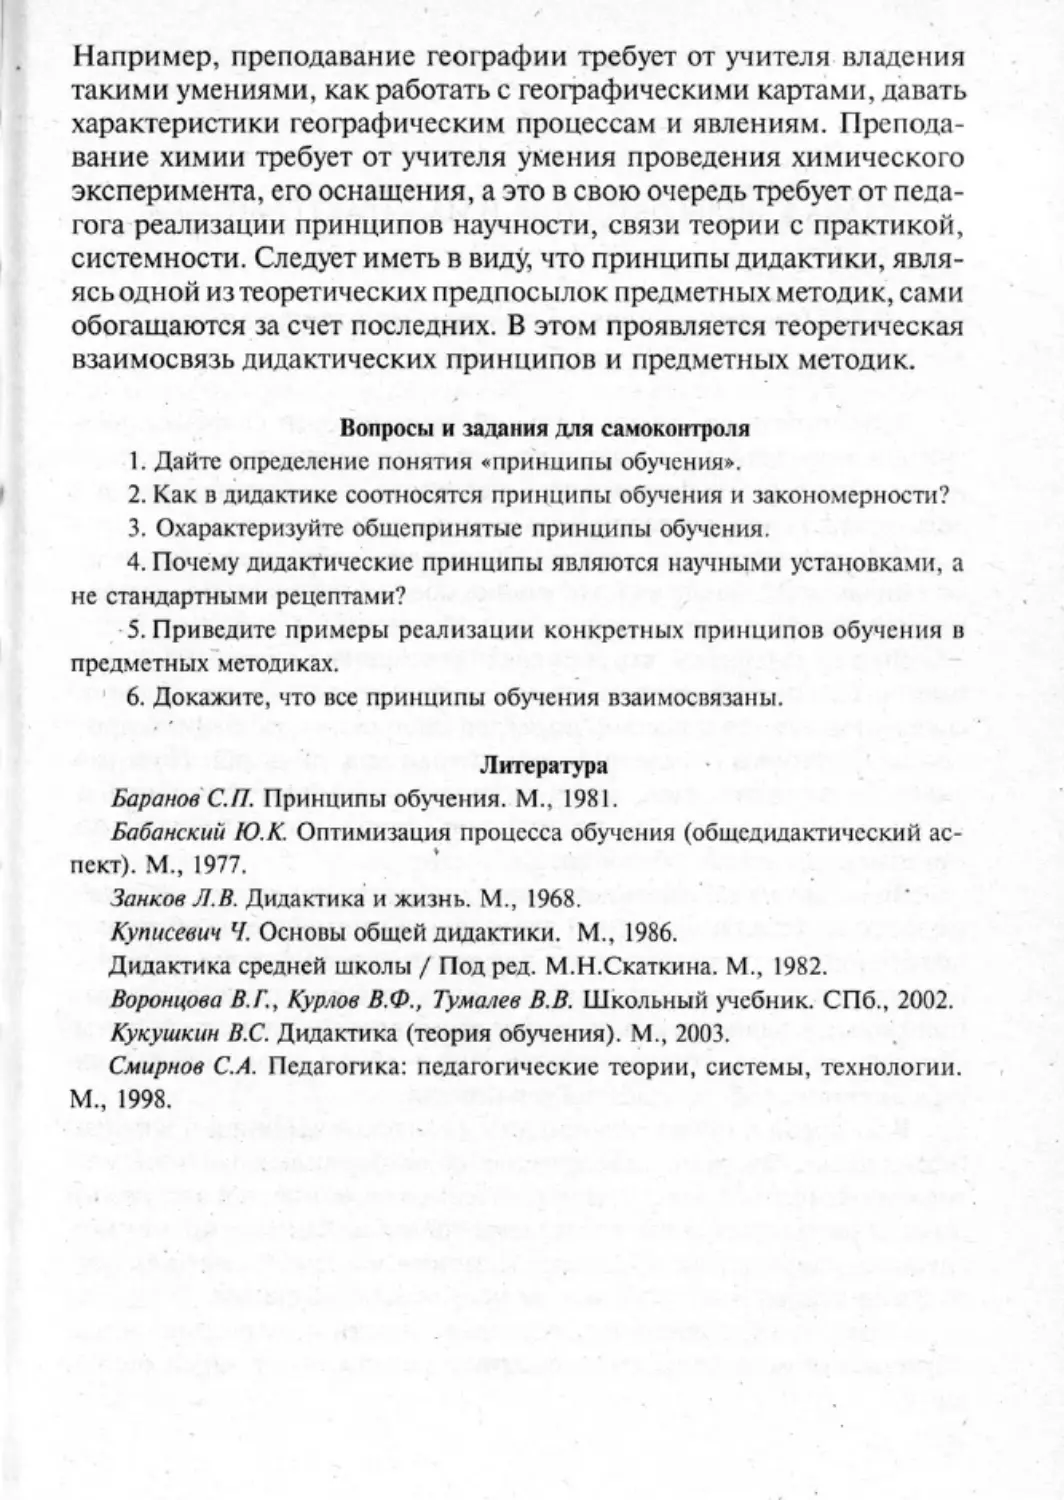 Загрекова Л.В., Николаева В.В - 0182